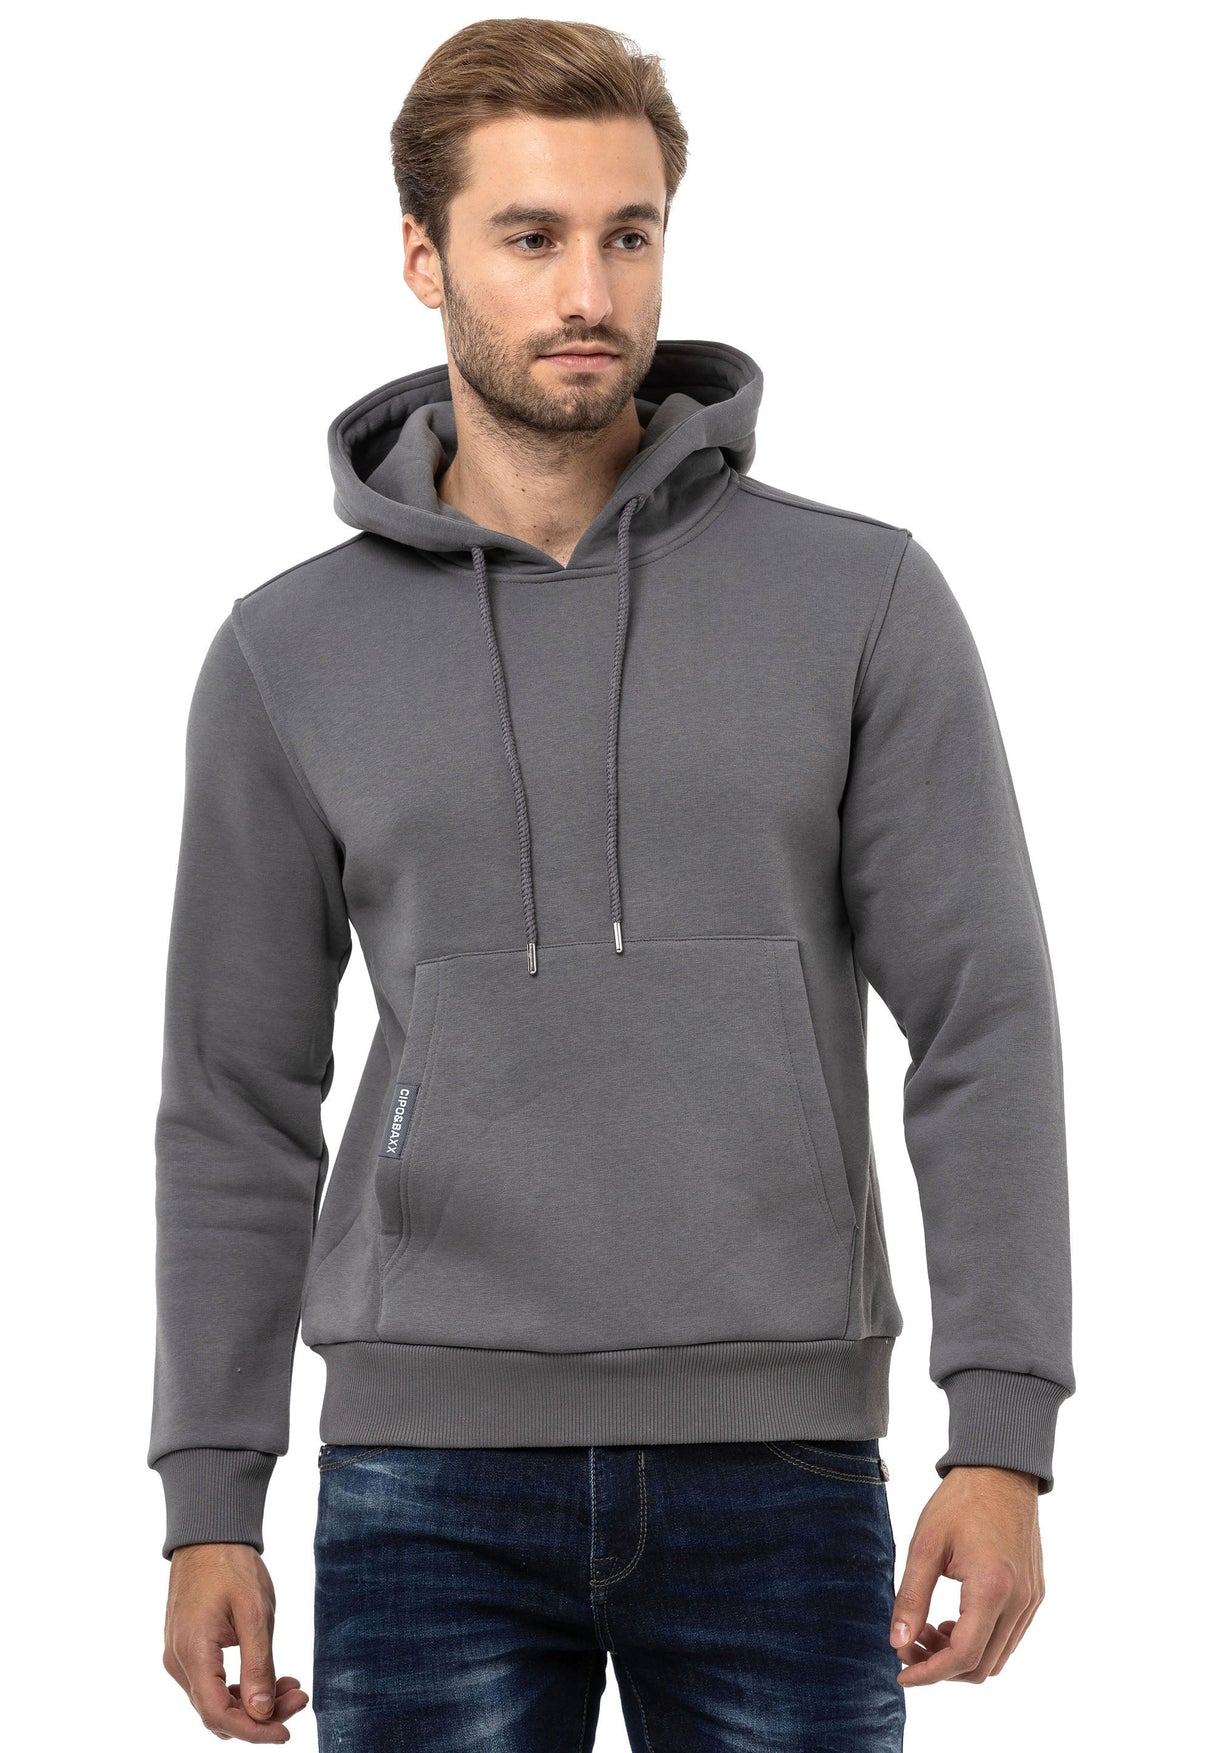 CL557 Men's Hooded Sweatshirt